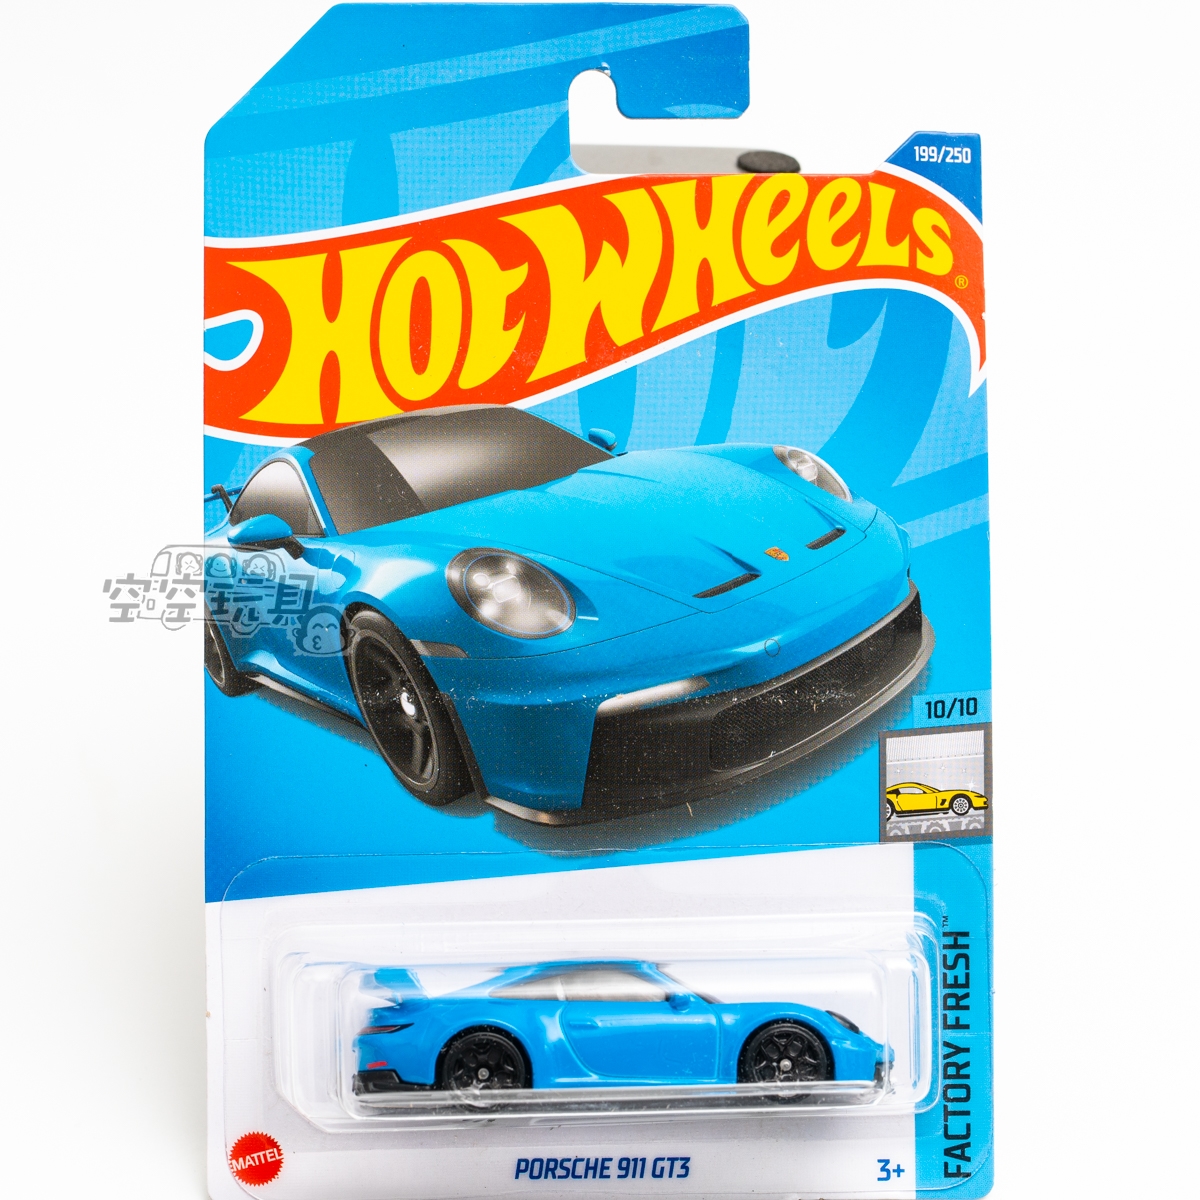 199号 PORSCHE 911 GT3 保时捷 蓝色 美泰风火轮合金小跑车